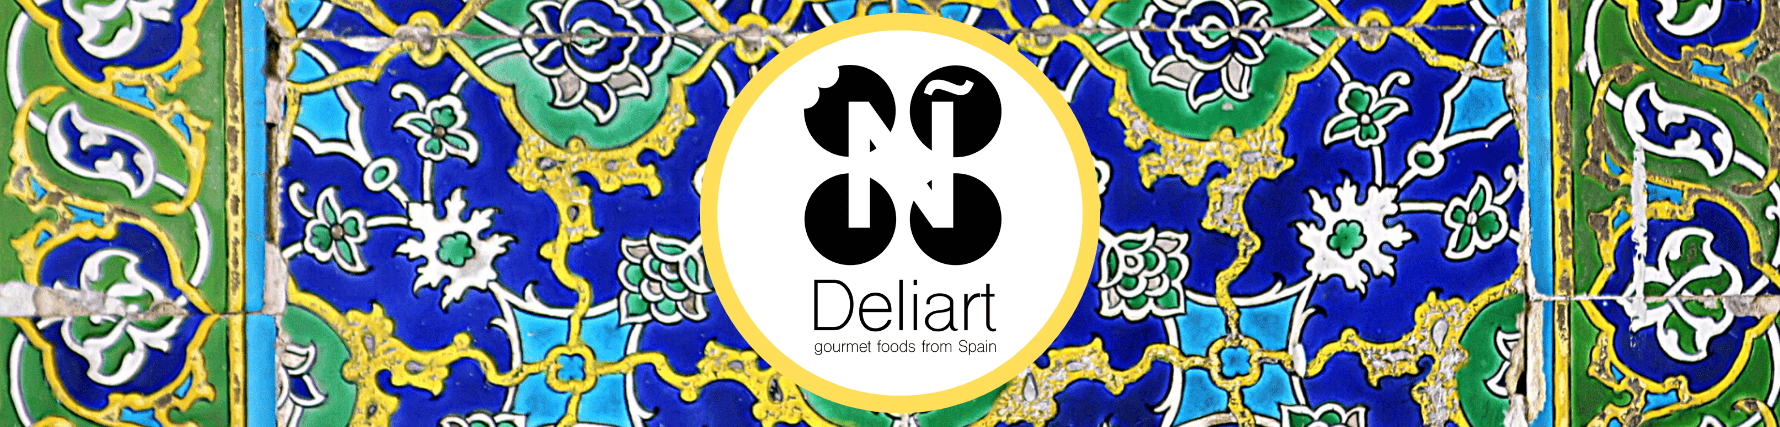 Deliart Foods Banner